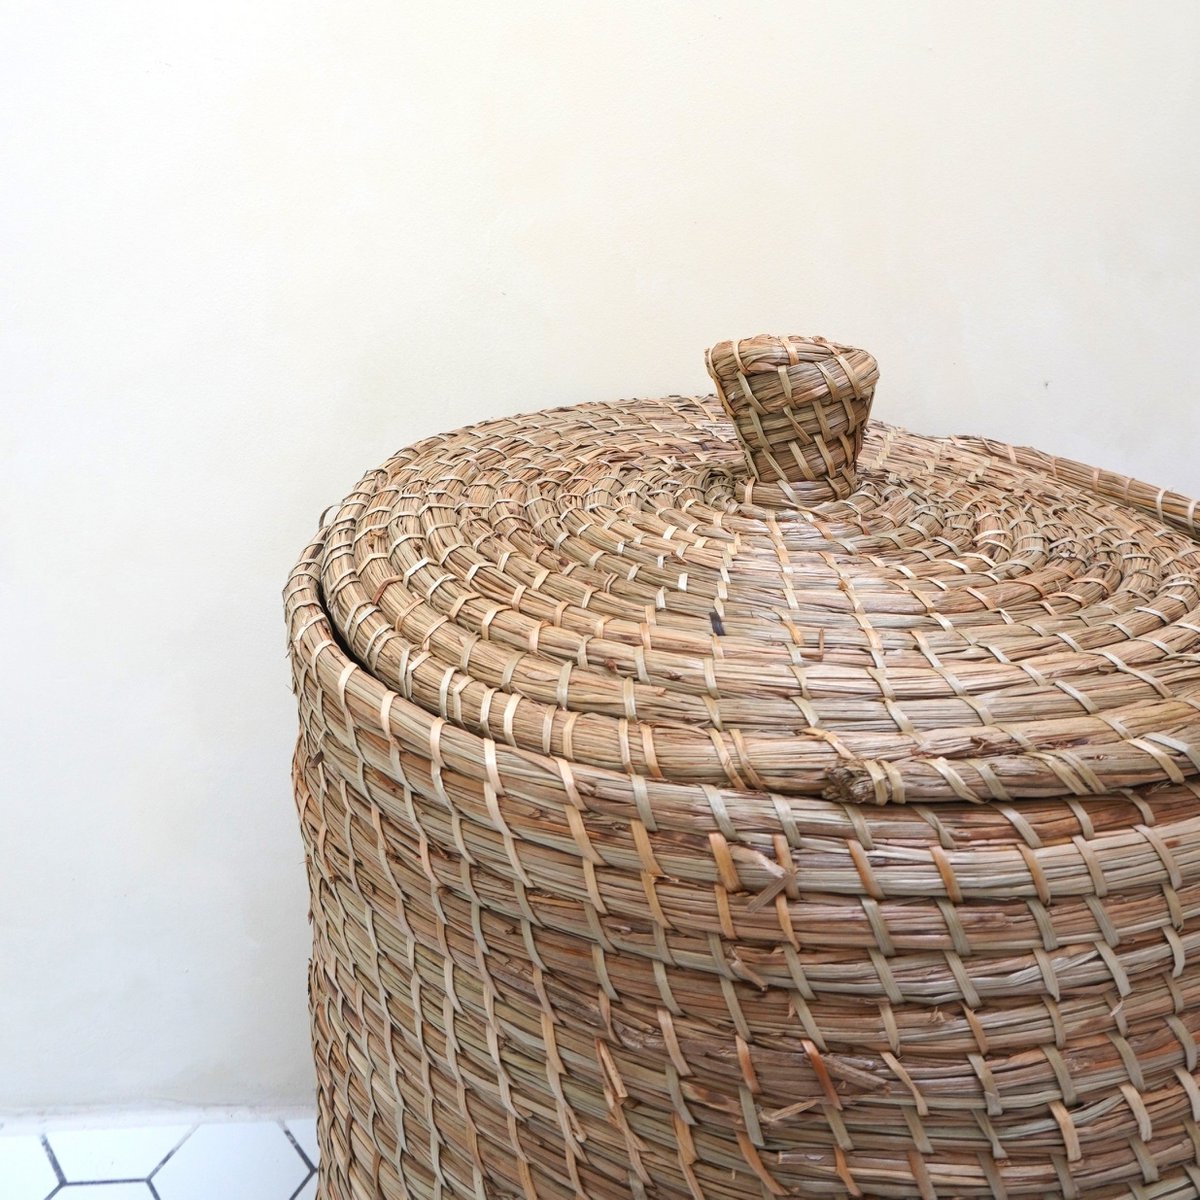 Wäschekorb mit Deckel LANTAI aus Seegras, handgefertigt aus natürlichen Materialien, runder Aufbewahrungskorb für Wäschekörbe